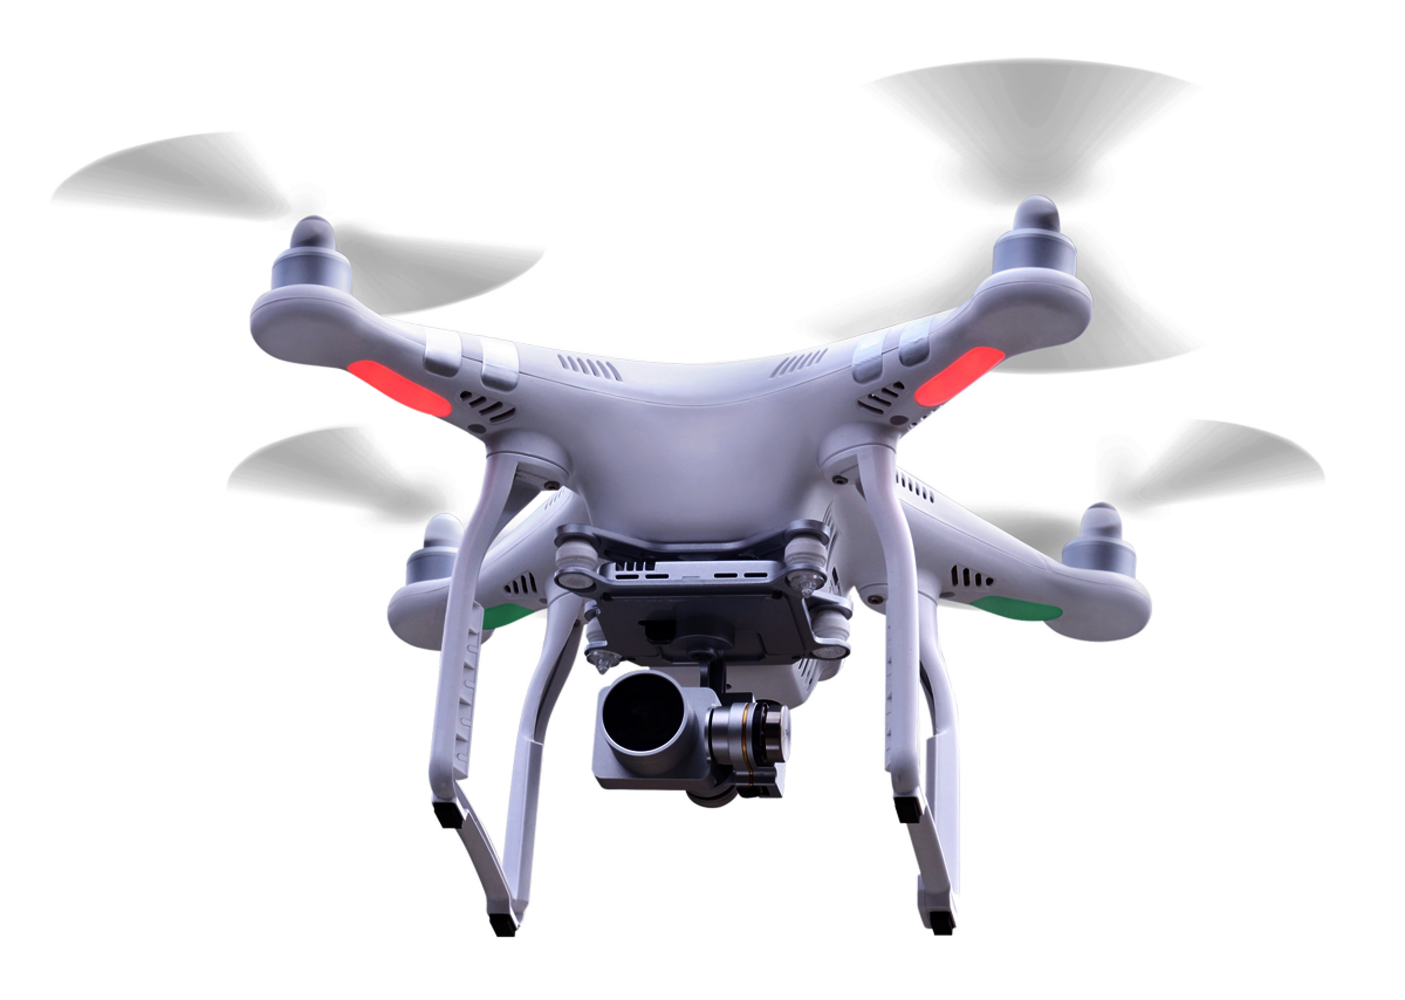 Consumer drone